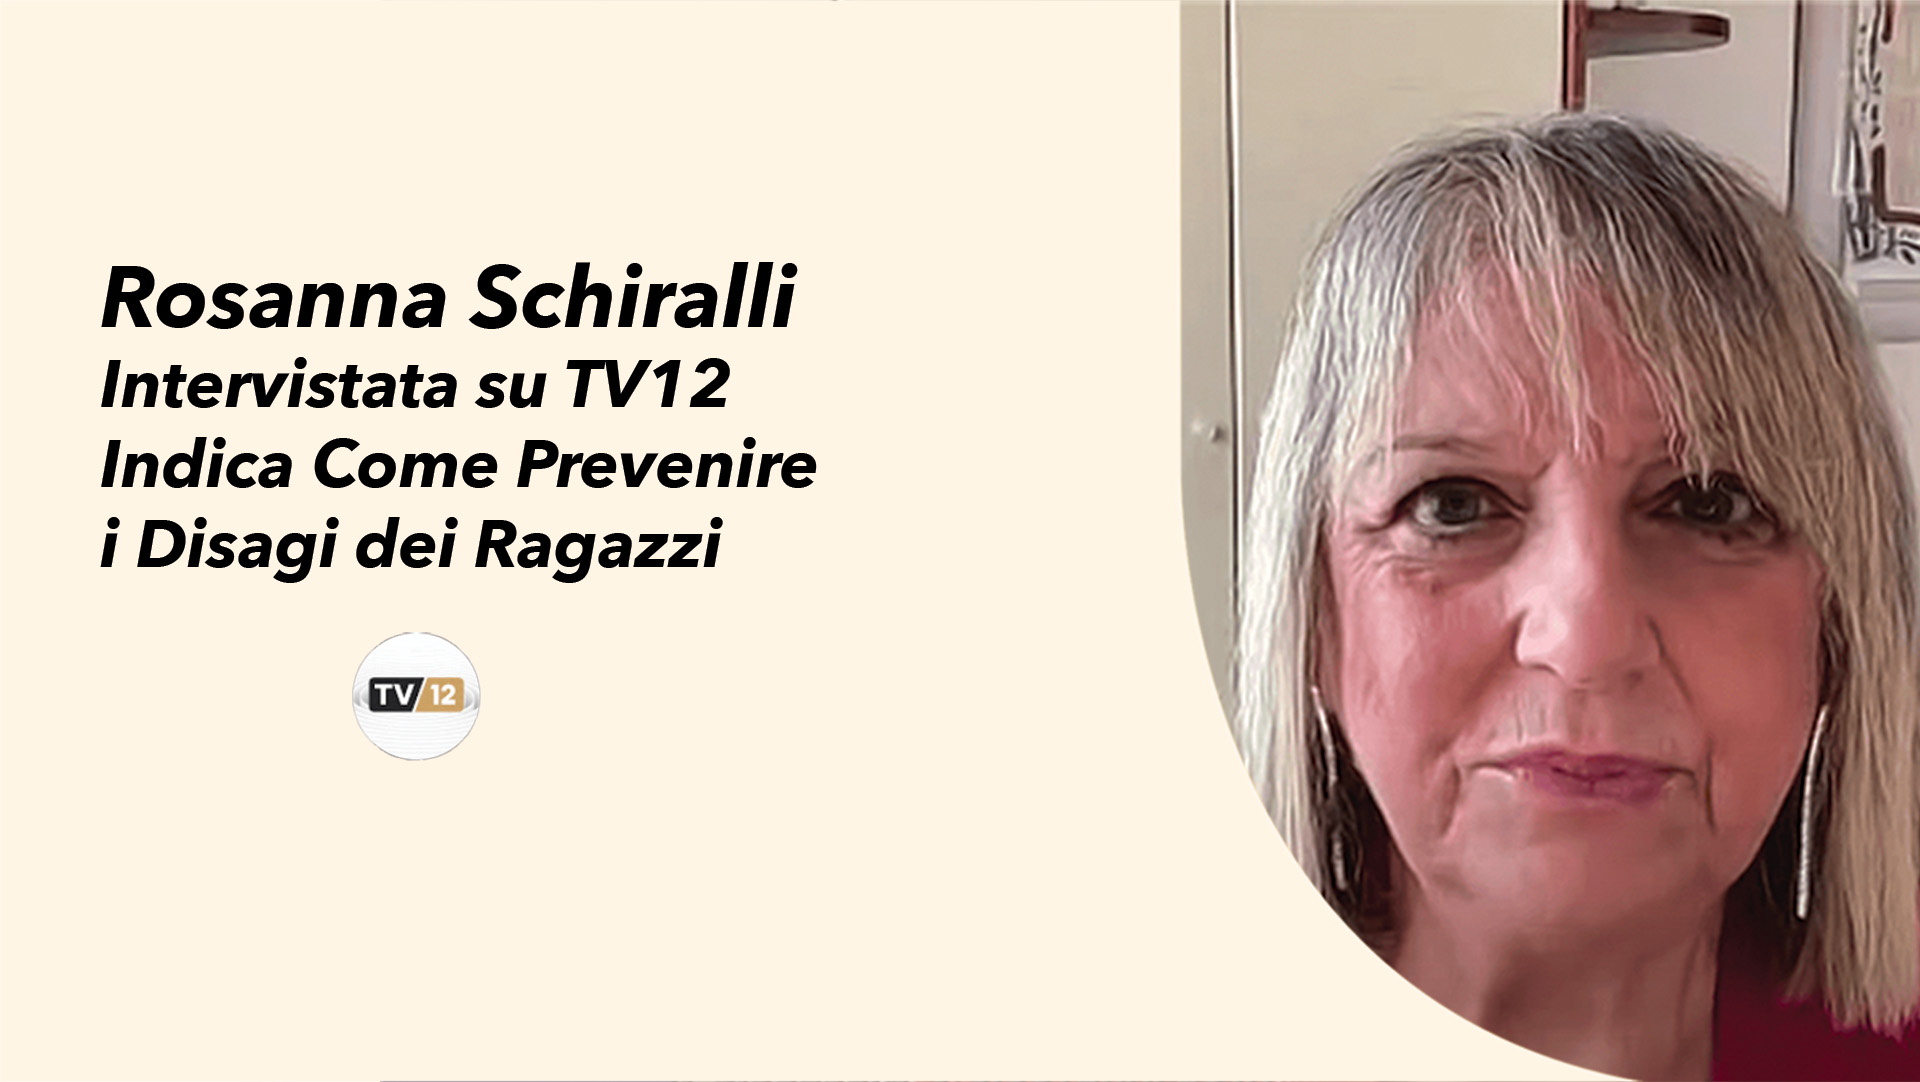 Educazione affettiva, Rosanna Schiralli intervistata su TV12